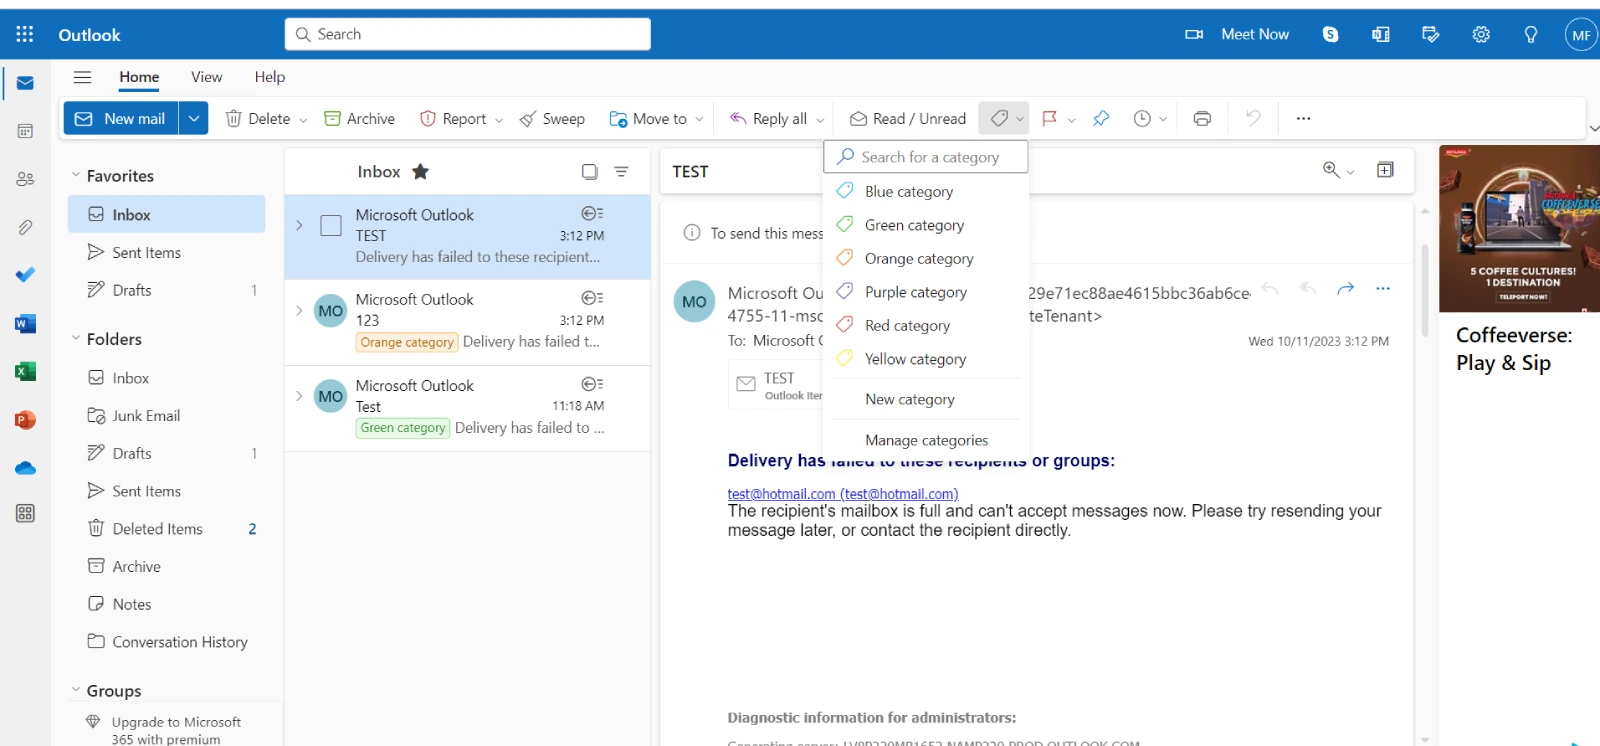 Outlook-Startseite, navigiere einfach durch den Abschnitt Tags und klicke auf Kategorisieren 